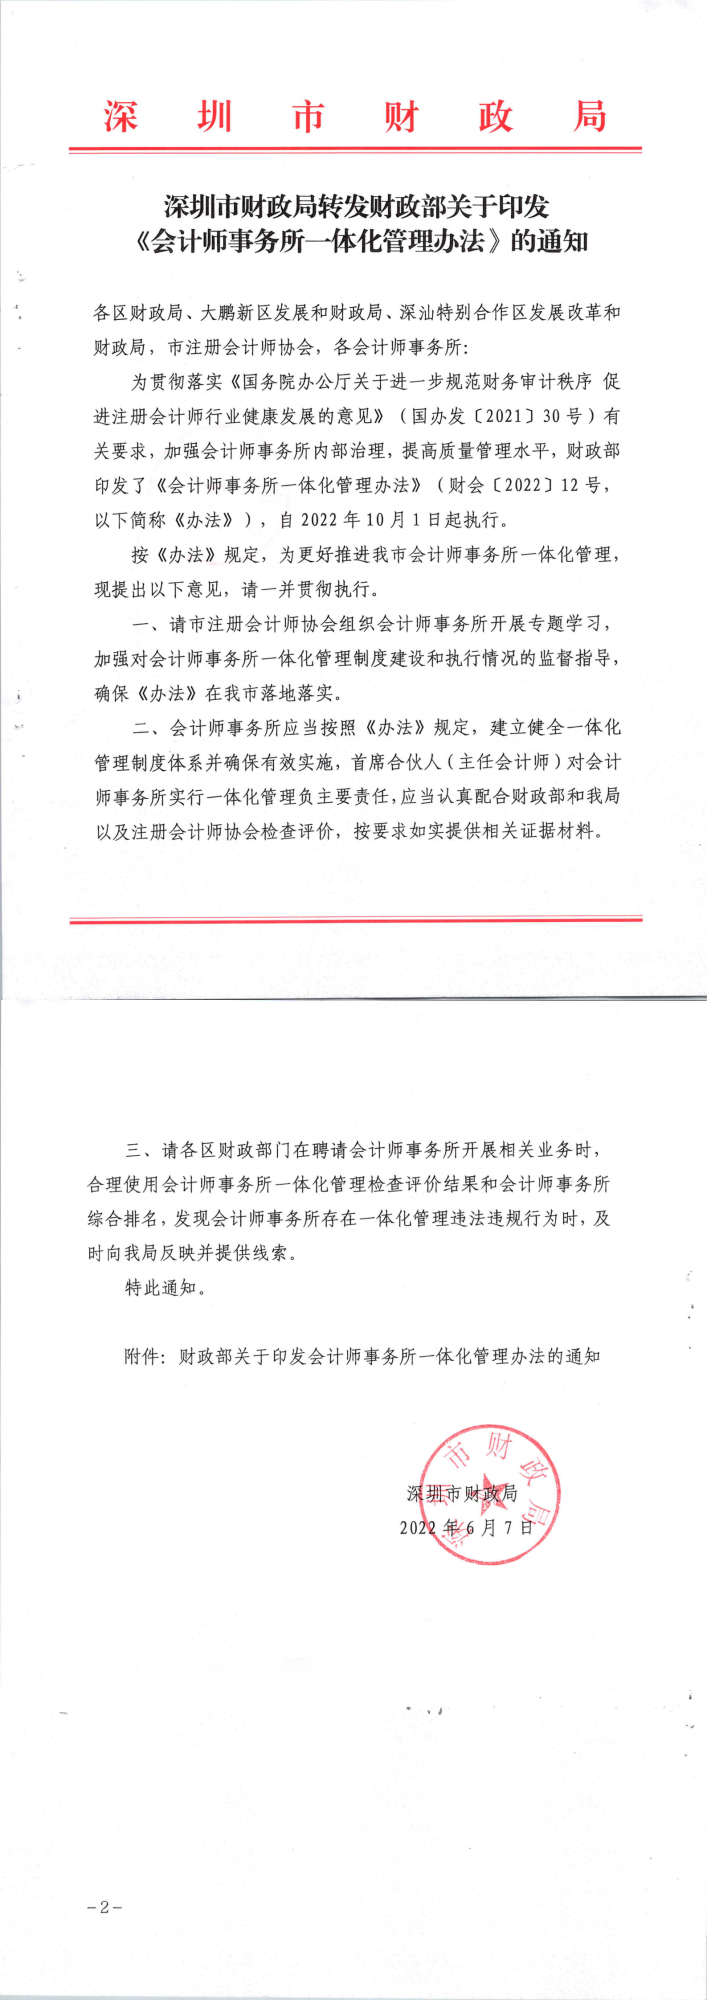 深圳市财政局转发财政部关于印发《会计师事务所一体化管理办法》的通知_00.png